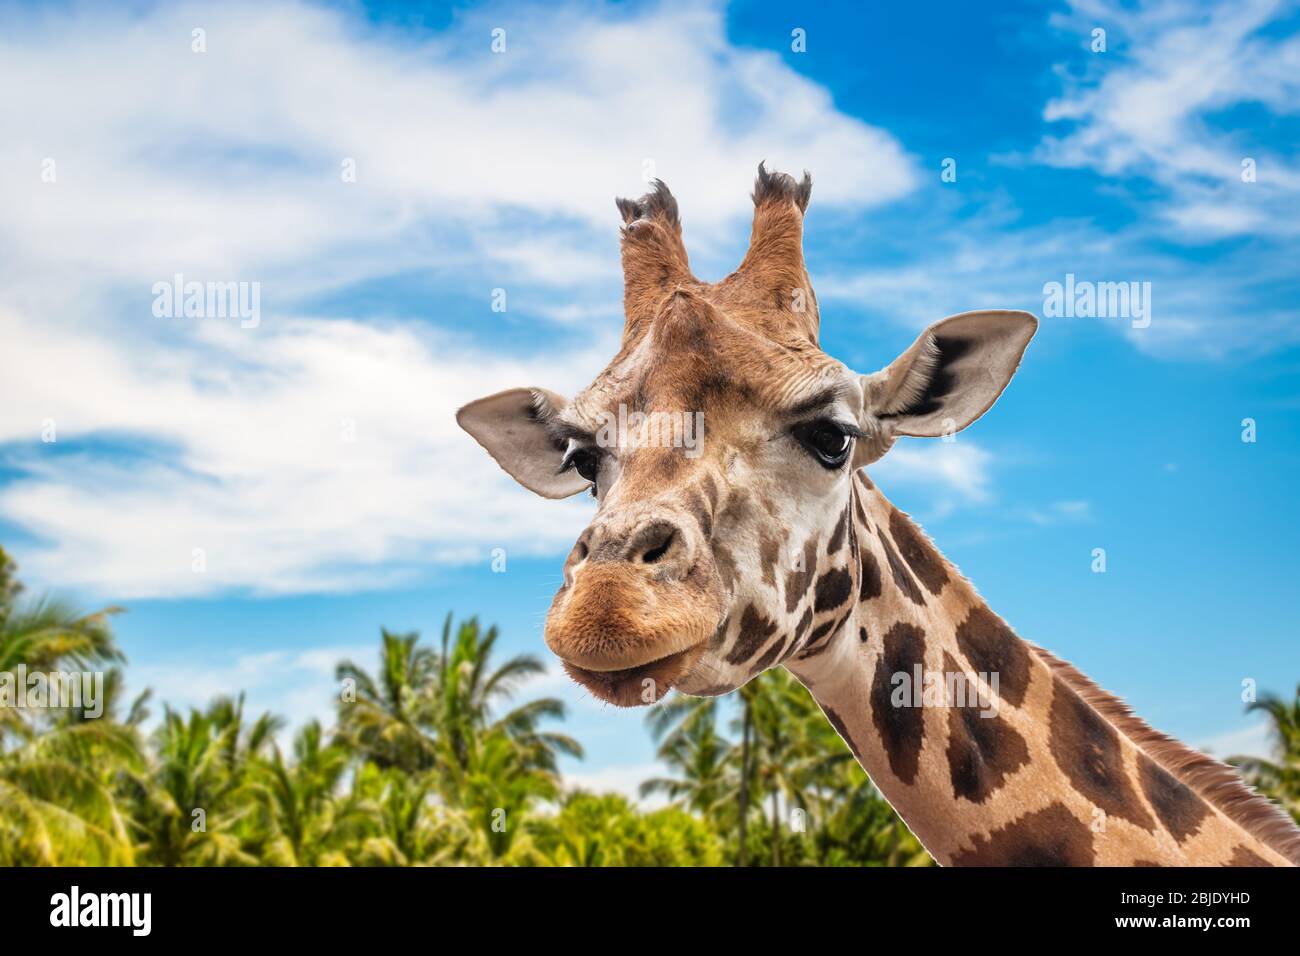 Jolie tête girafe tournée vers l'avant. Fermer la vue. Nature floue à l'arrière-plan avec ciel bleu, nuages blancs et palmiers. Banque D'Images